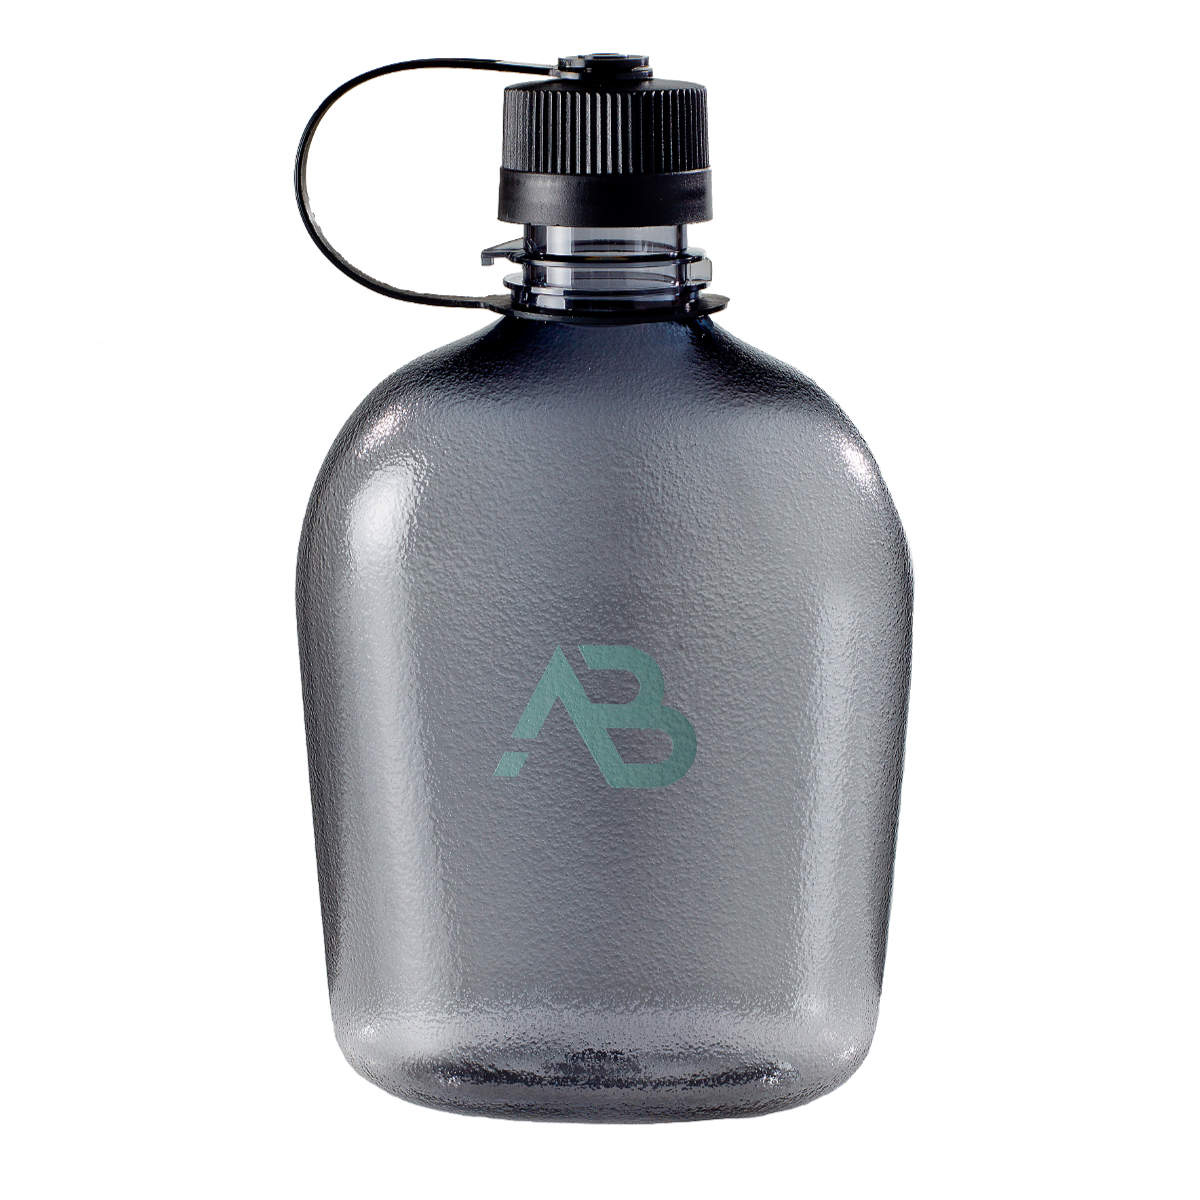 AB Feldflasche G.I Aluminiumfeldflasche Aluminium Stoffbezug 1 Liter 